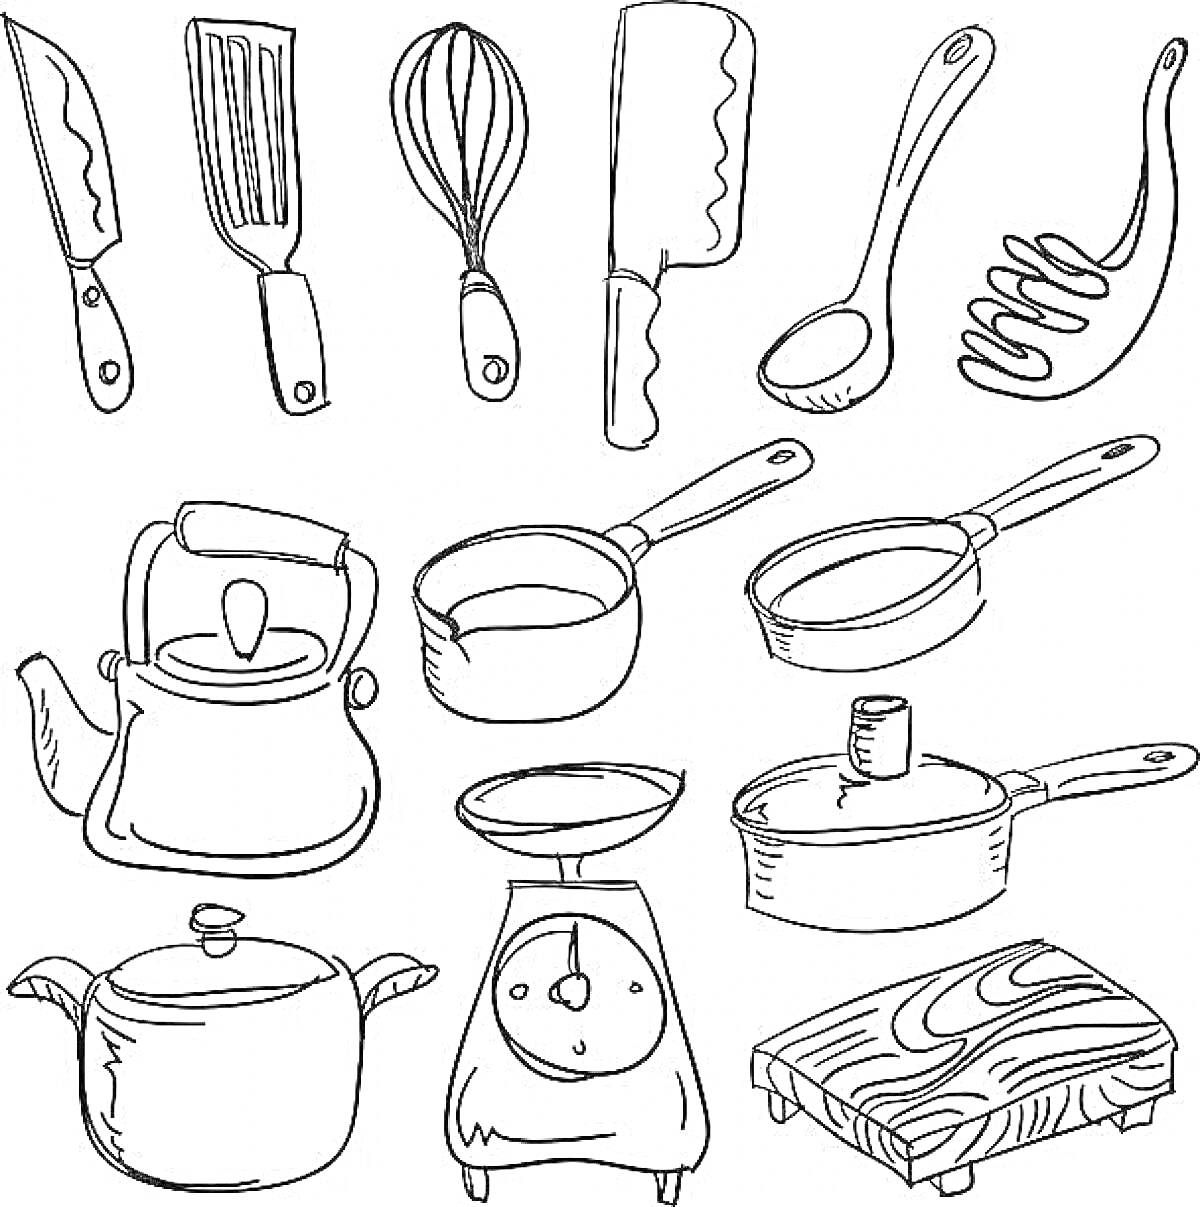 Раскраска Кухонная посуда: нож, лопатка, венчик, топорик для мяса, ложка, половник, чайник, ковш, сковорода, кастрюля, терка, доска для резки